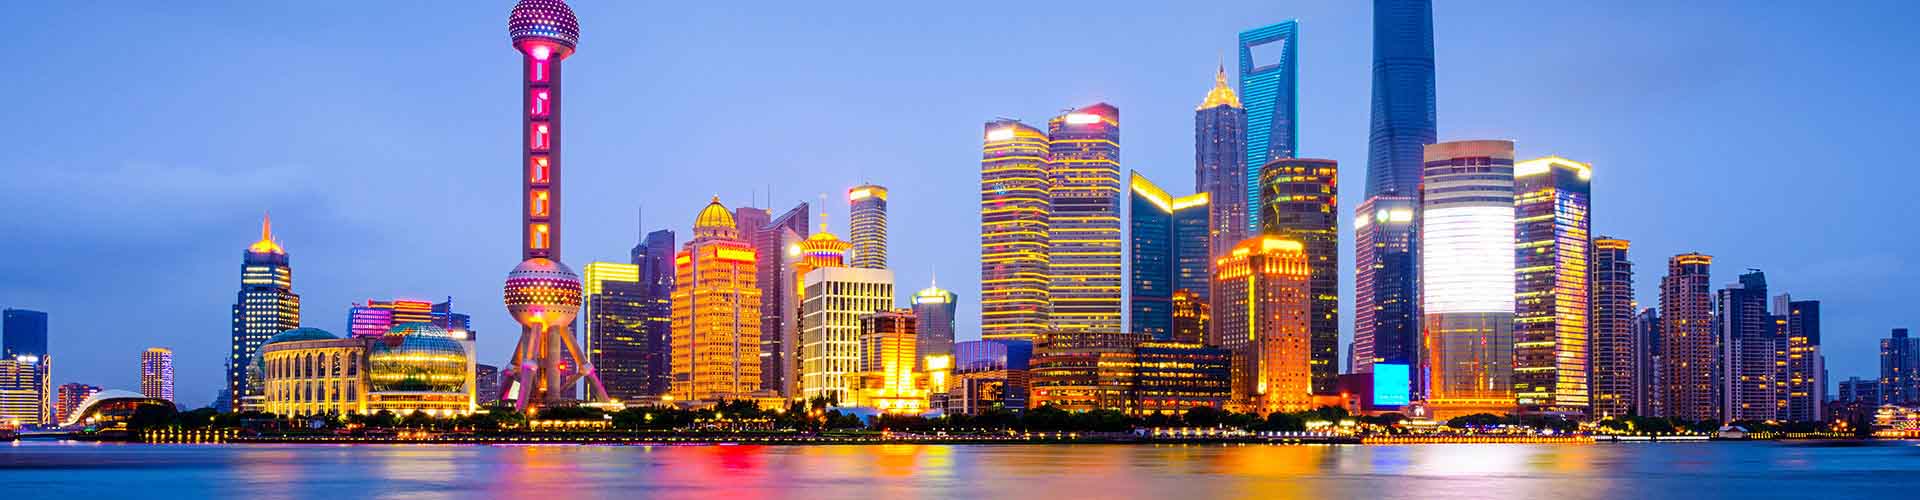 Xangai está a postos para receber primeira Exposição Internacional de Importações da China